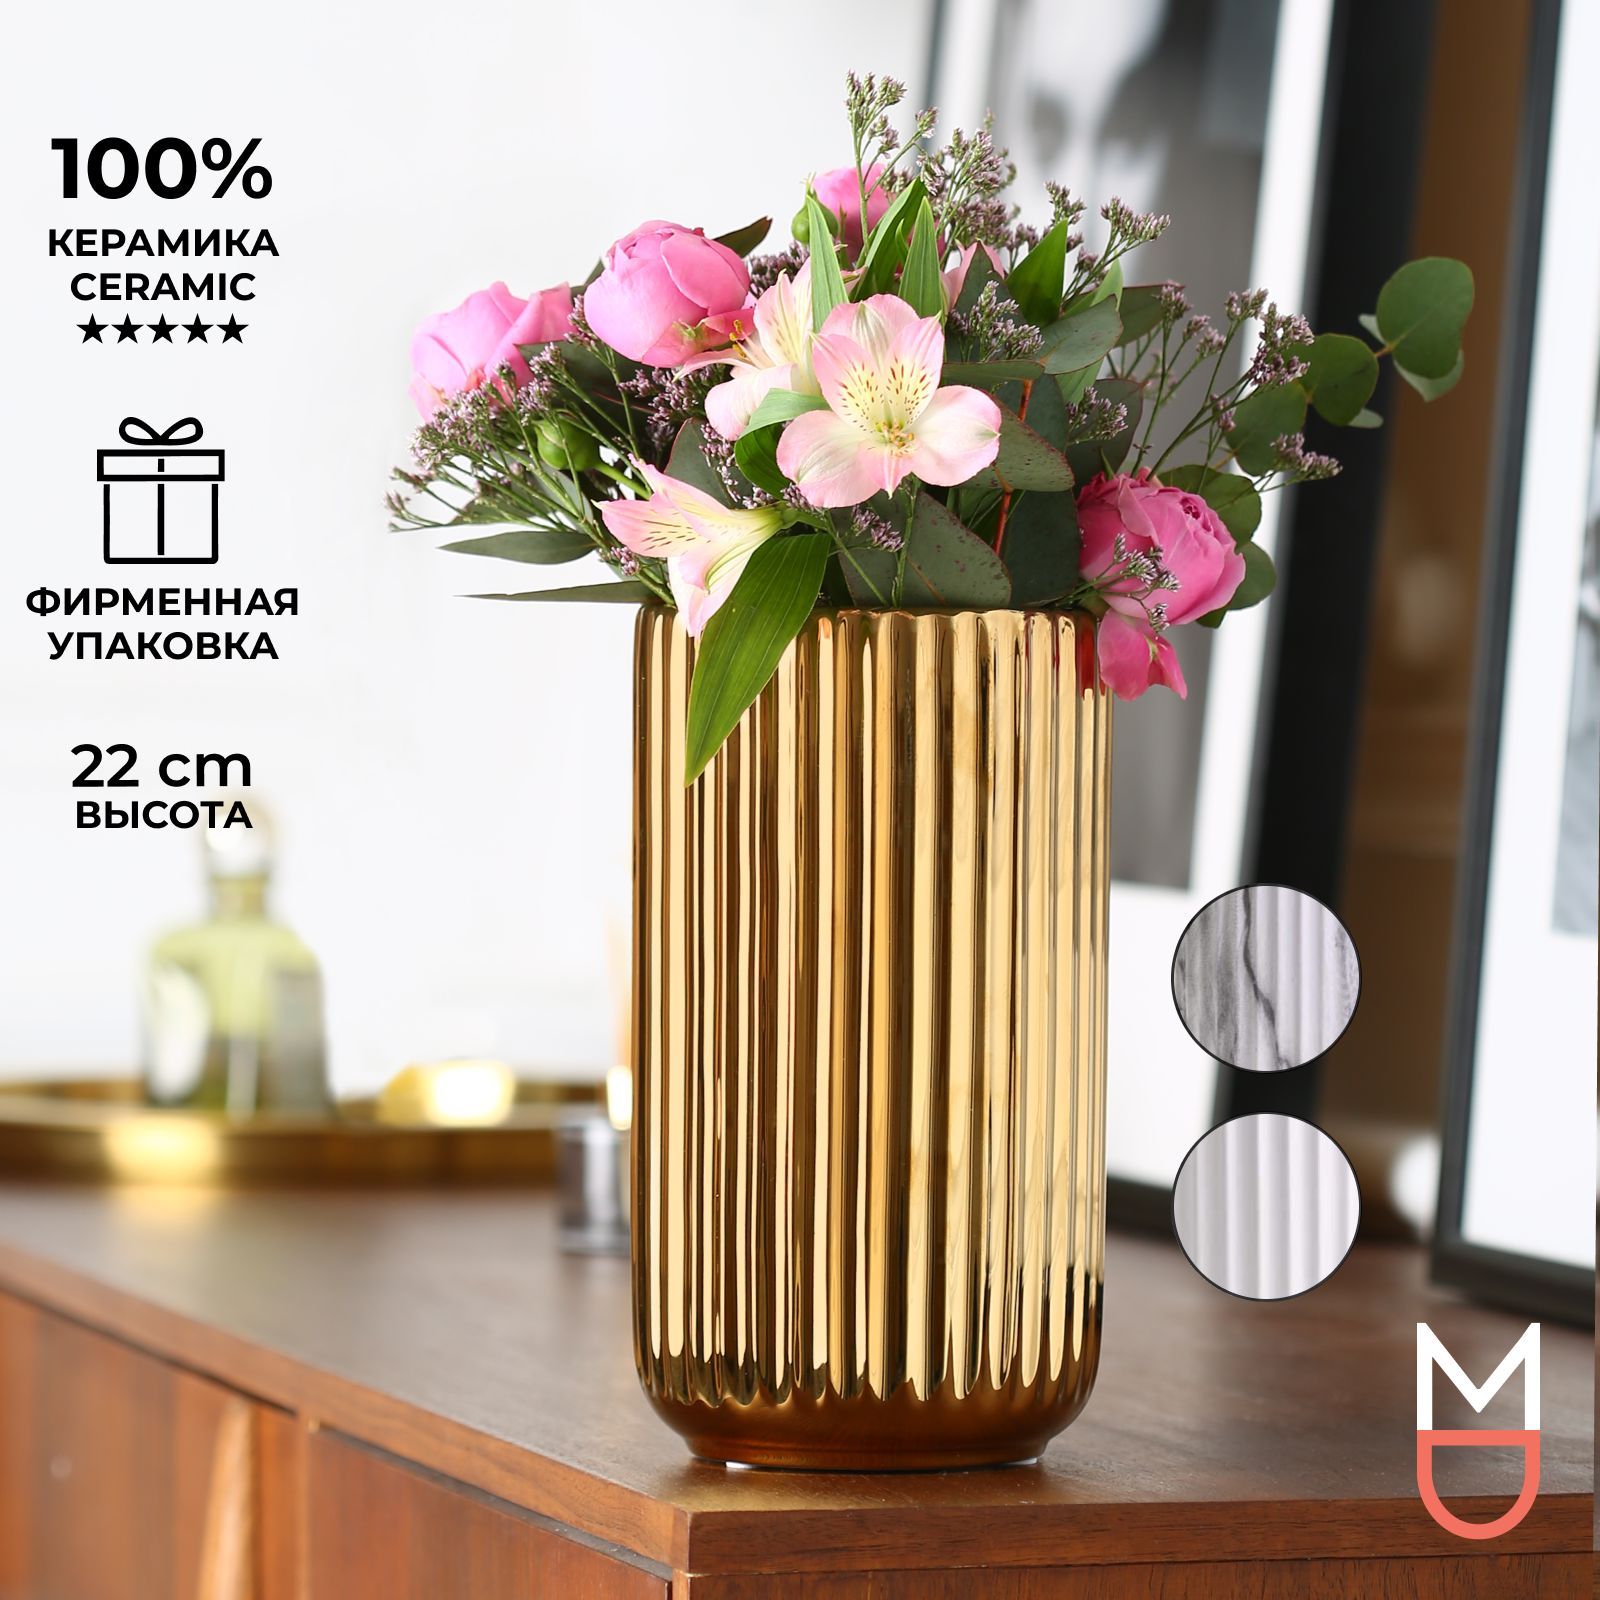 Как подобрать вазу для букета цветов: рекомендации флористов